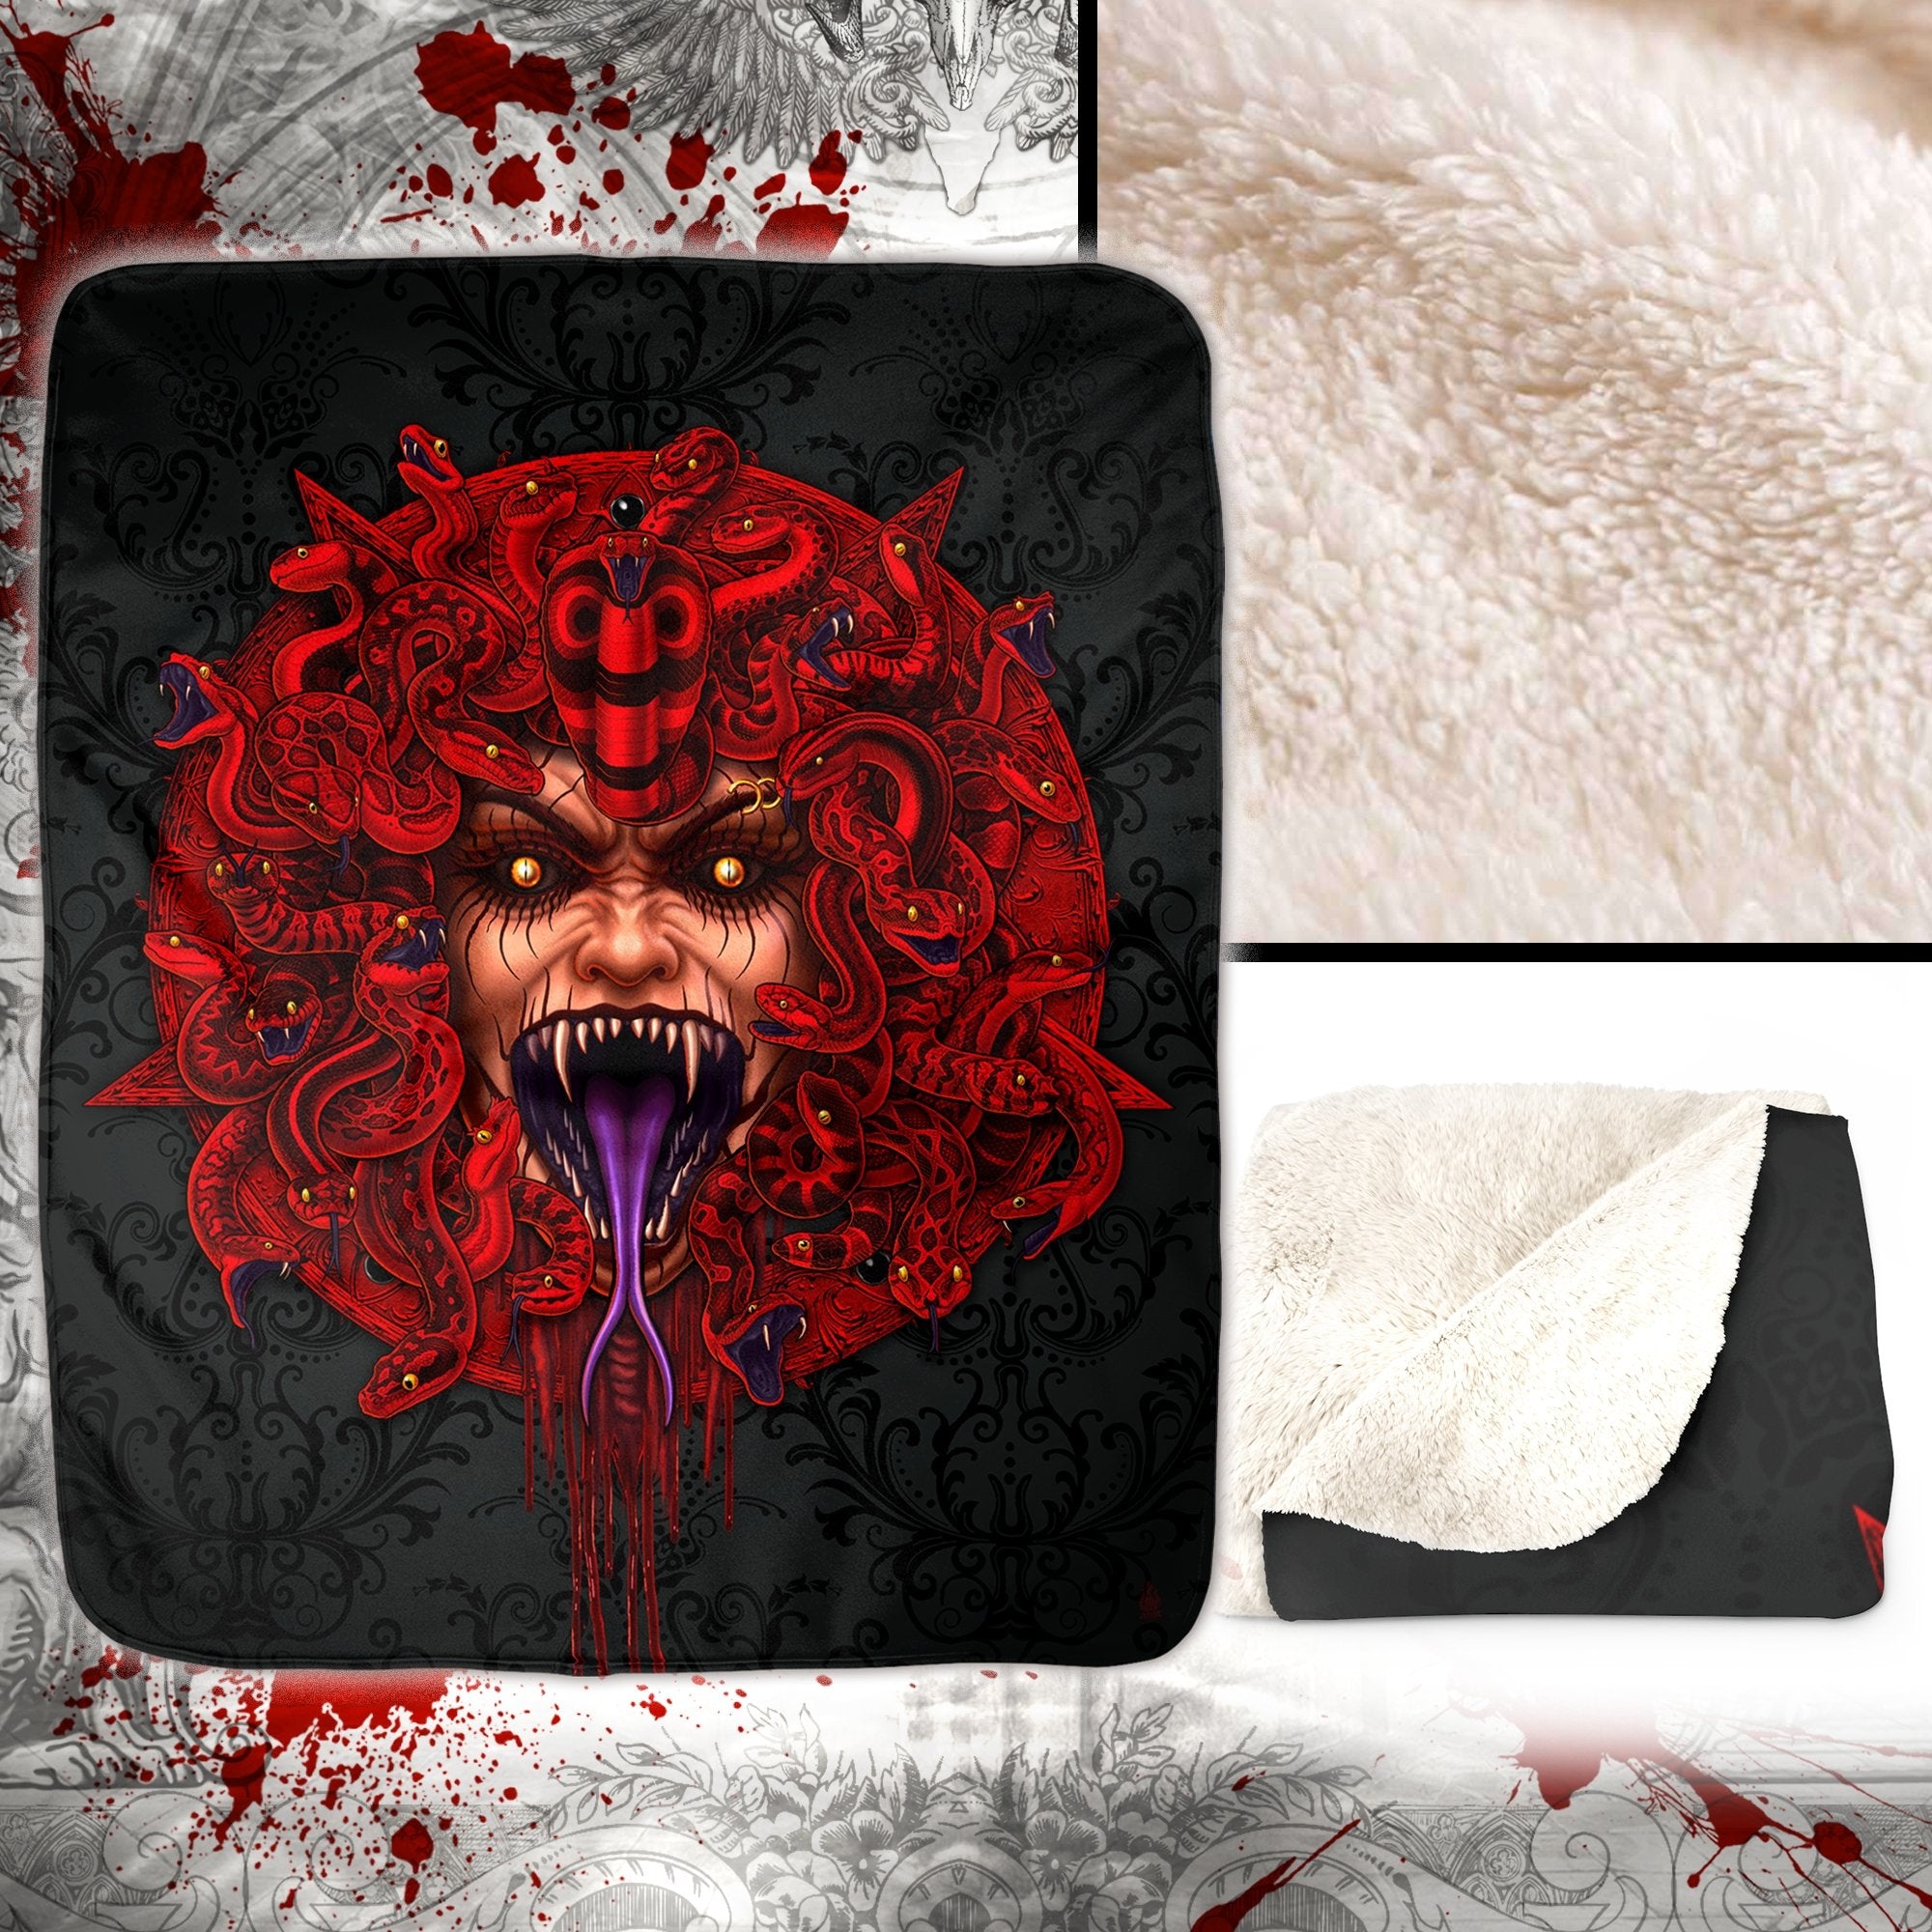 Satanic Throw Fleece Blanket, Demon Medusa, Goth Horror Decor, Alternative Art Gift - Red Snakes, Rage - Abysm Internal